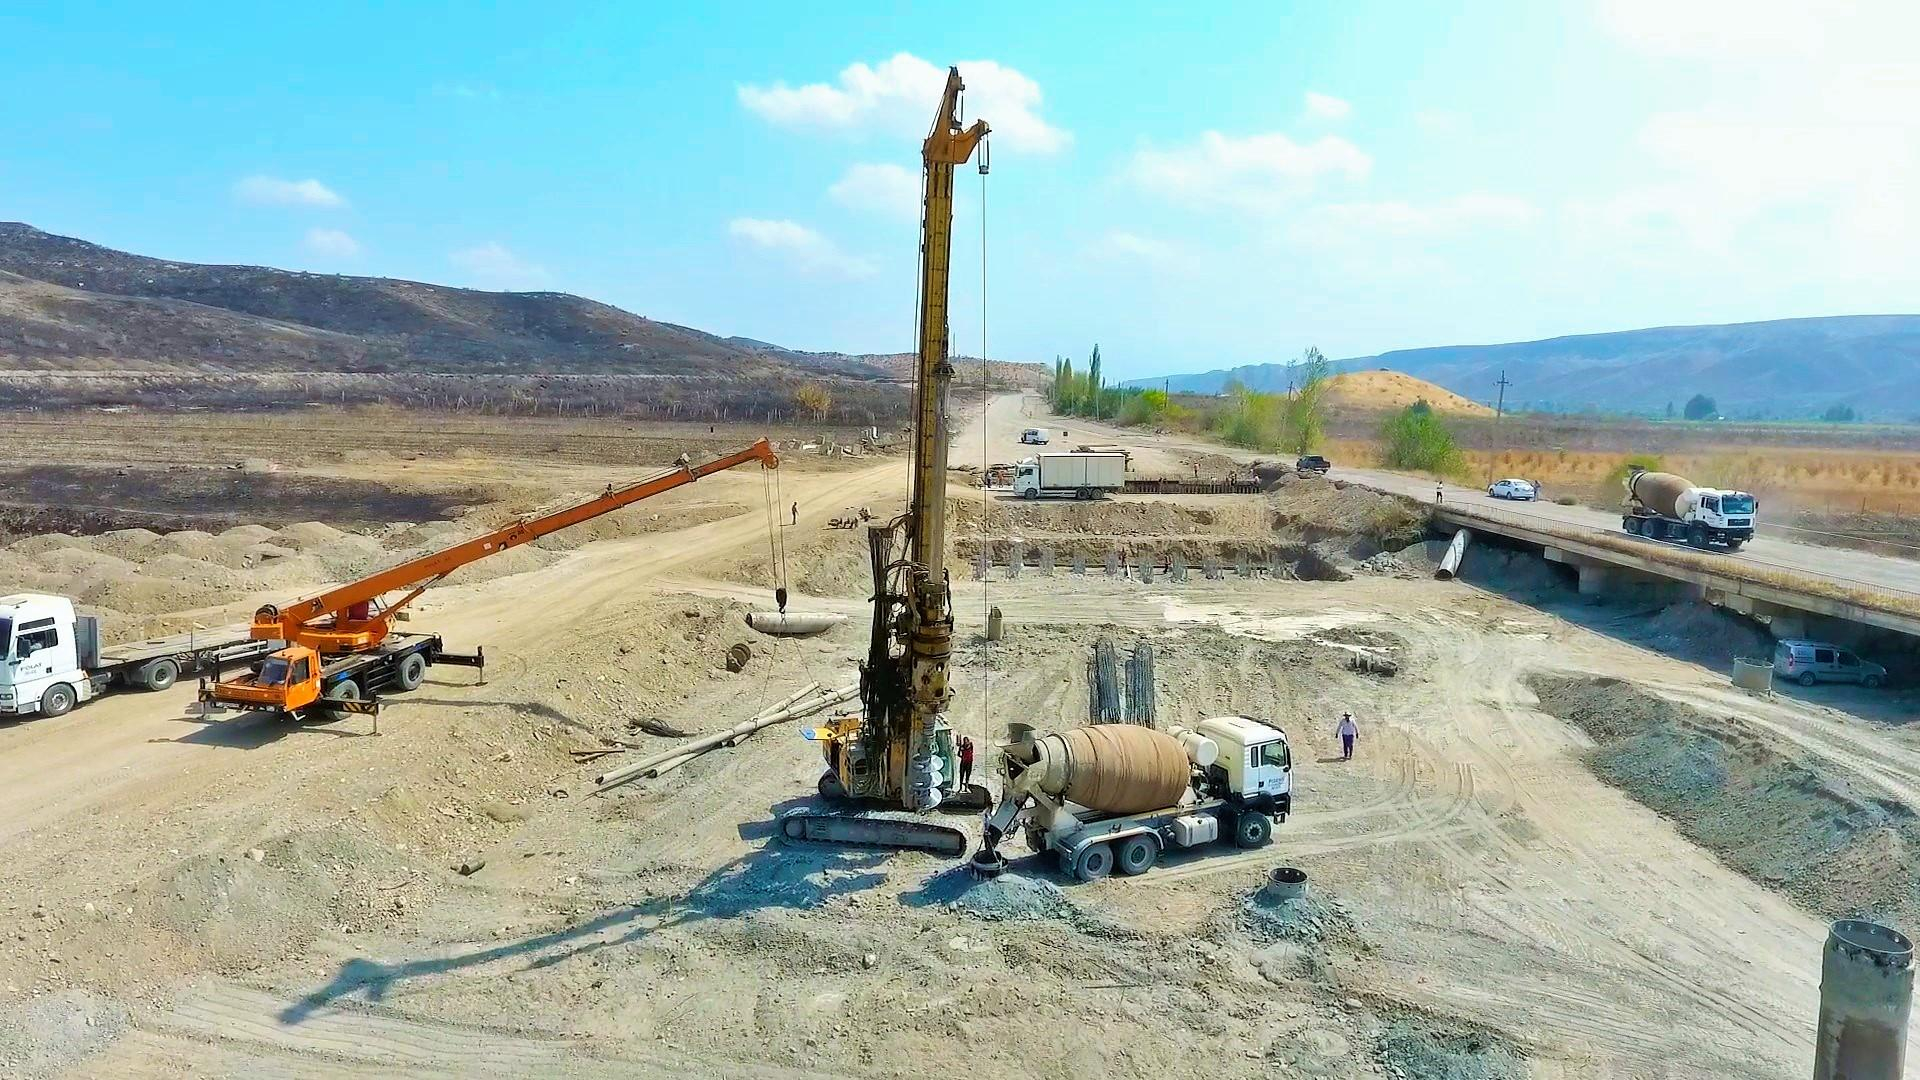 Xudafərin-Qubadlı-Laçın və Xanlıq-Qubadlı avtomobil yollarının inşası sürətlə davam etdirilir - FOTO